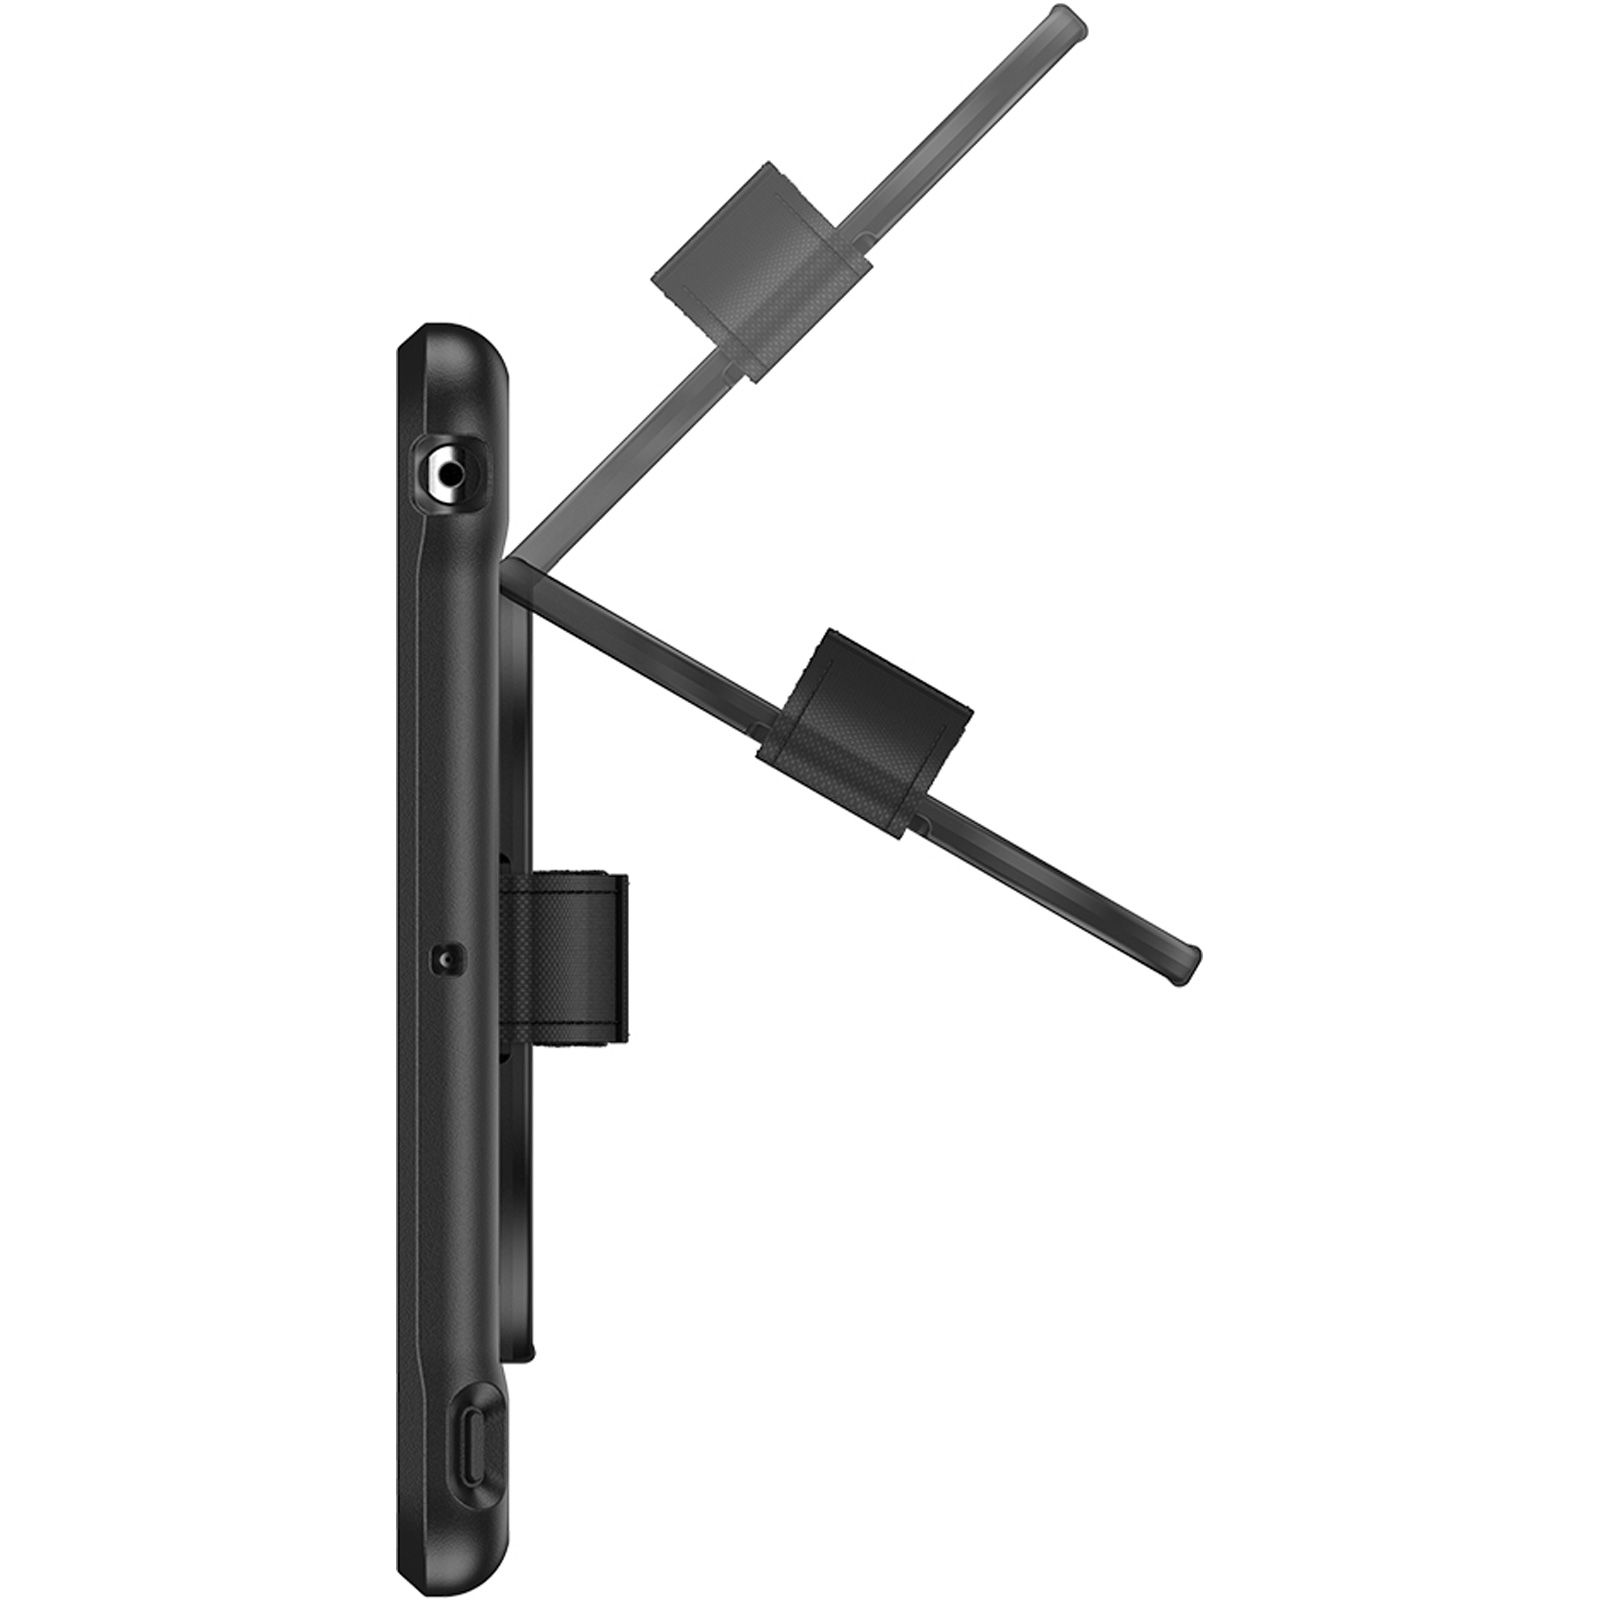 Casecentive Handstrap - Coque Antichoc - iPad Pro 12,9 noir